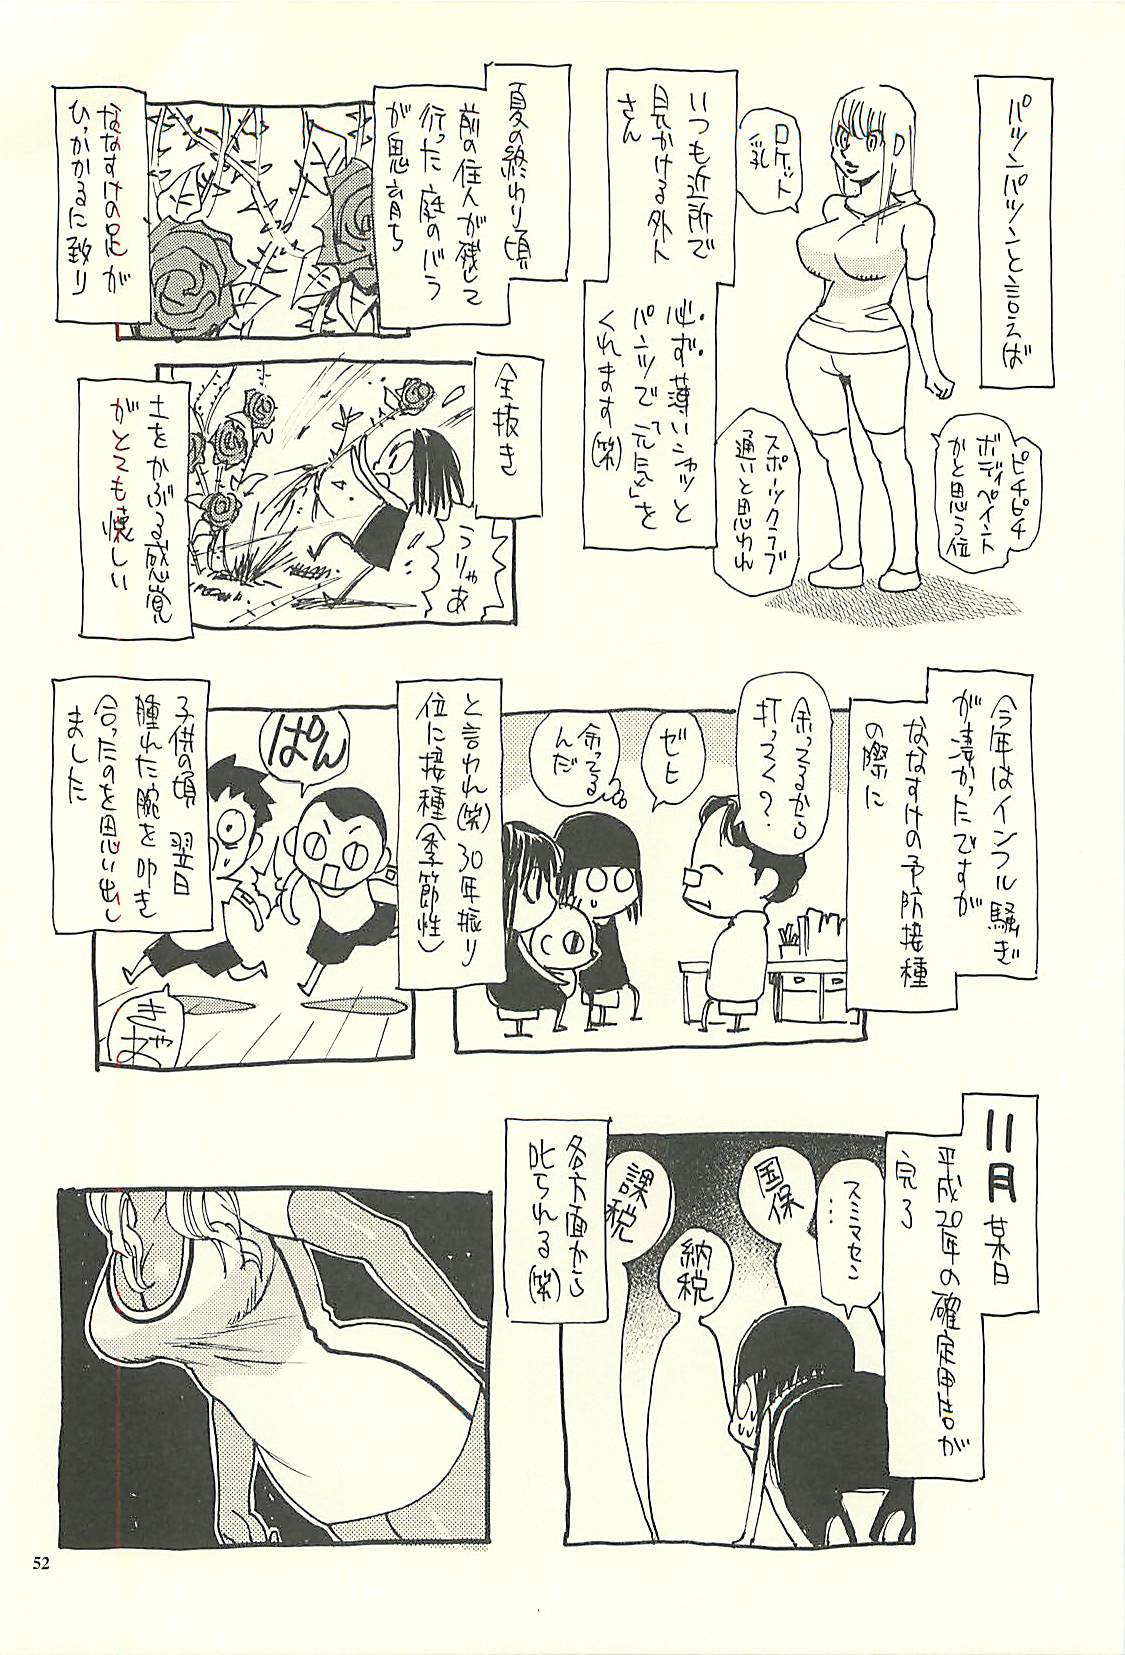 [NOUZUI MAJUTSU, NO-NO'S (Kawara Keisuke,Kanesada Keishi)] Nouzui Kawaraban Hinichijoutekina Nichijou V [脳髄魔術, NO-NO'S (瓦敬助, 兼処敬士)] 脳髄瓦版 非日常的な日常V